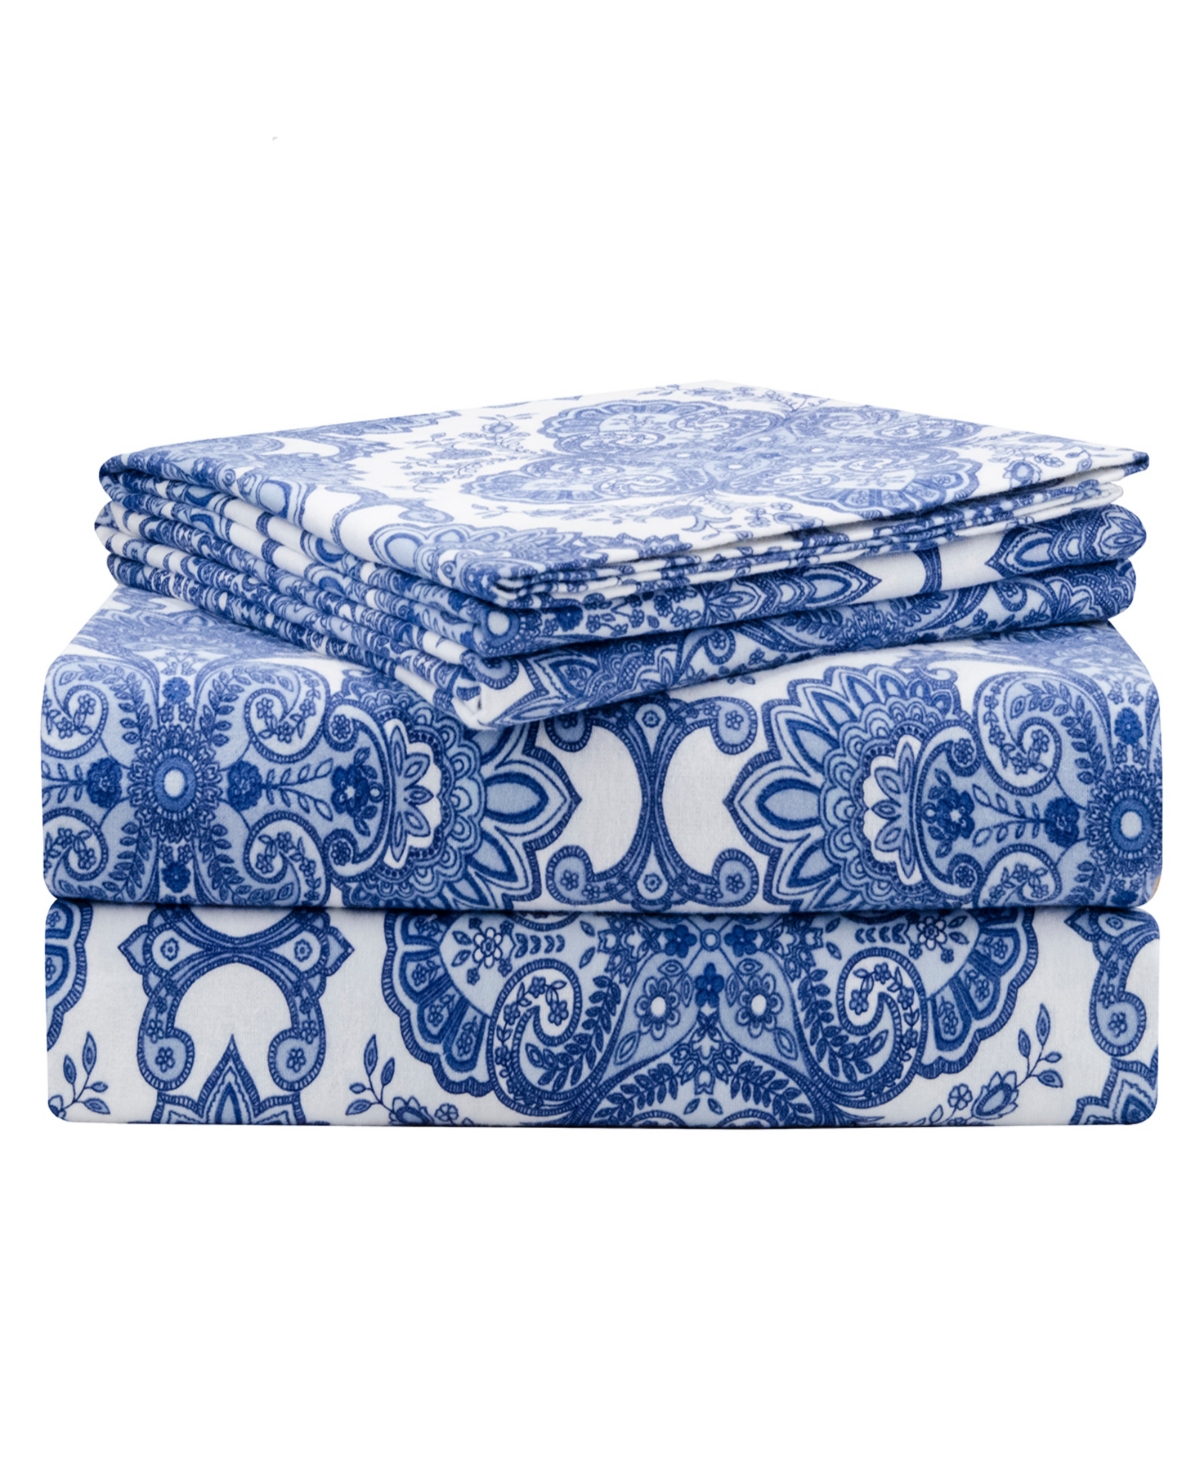 Pointehaven Alpine Blue Luxury Weight Flannel Sheet Set, Full